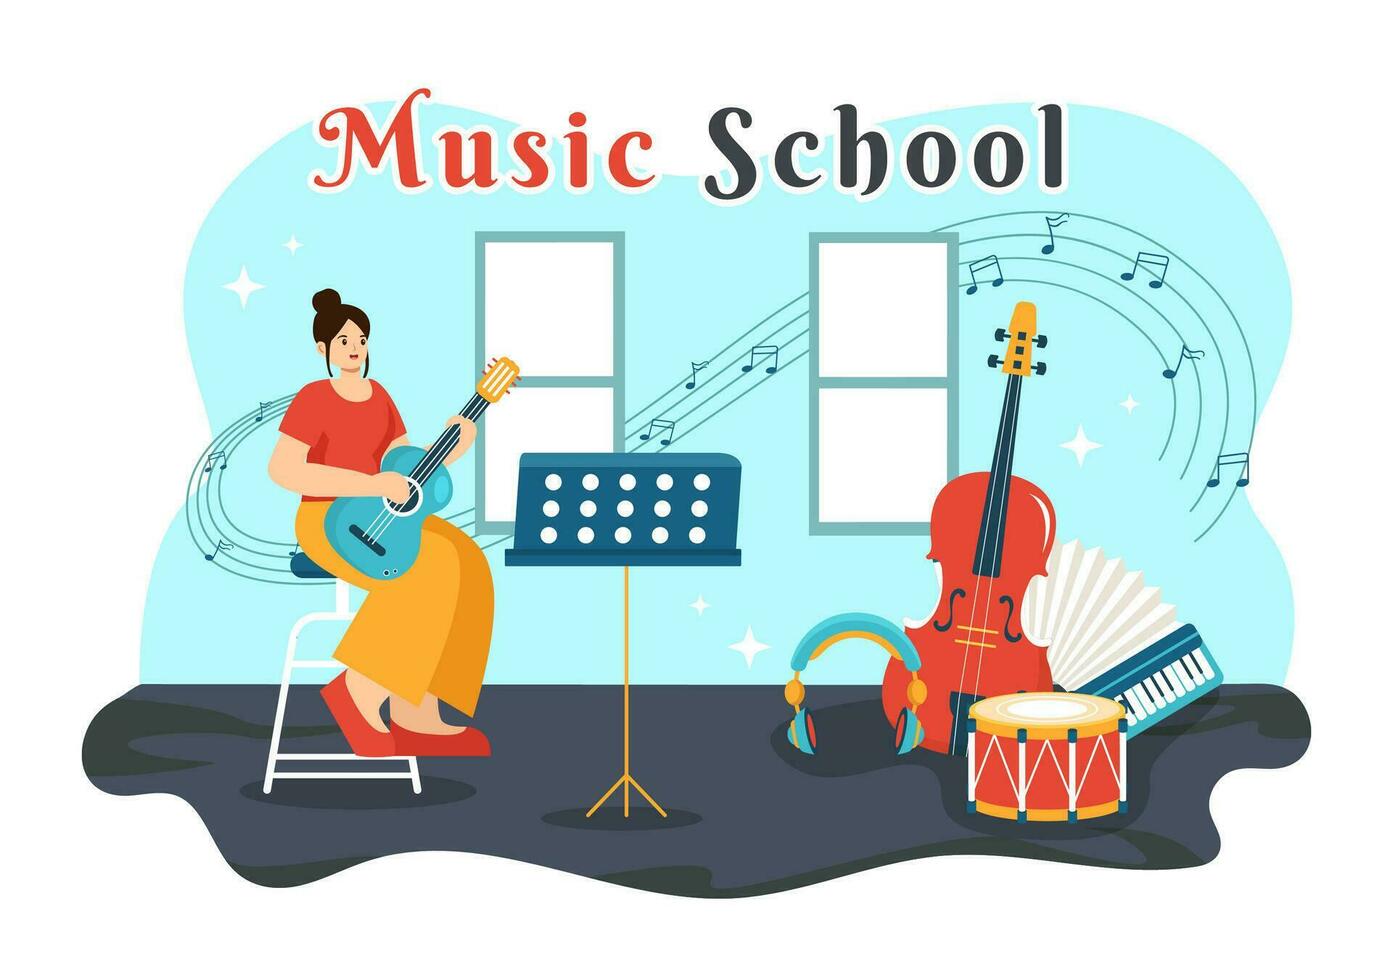 muziek- school- vector illustratie met spelen divers musical instrumenten, aan het leren onderwijs muzikanten en zangers in vlak kinderen tekenfilm achtergrond